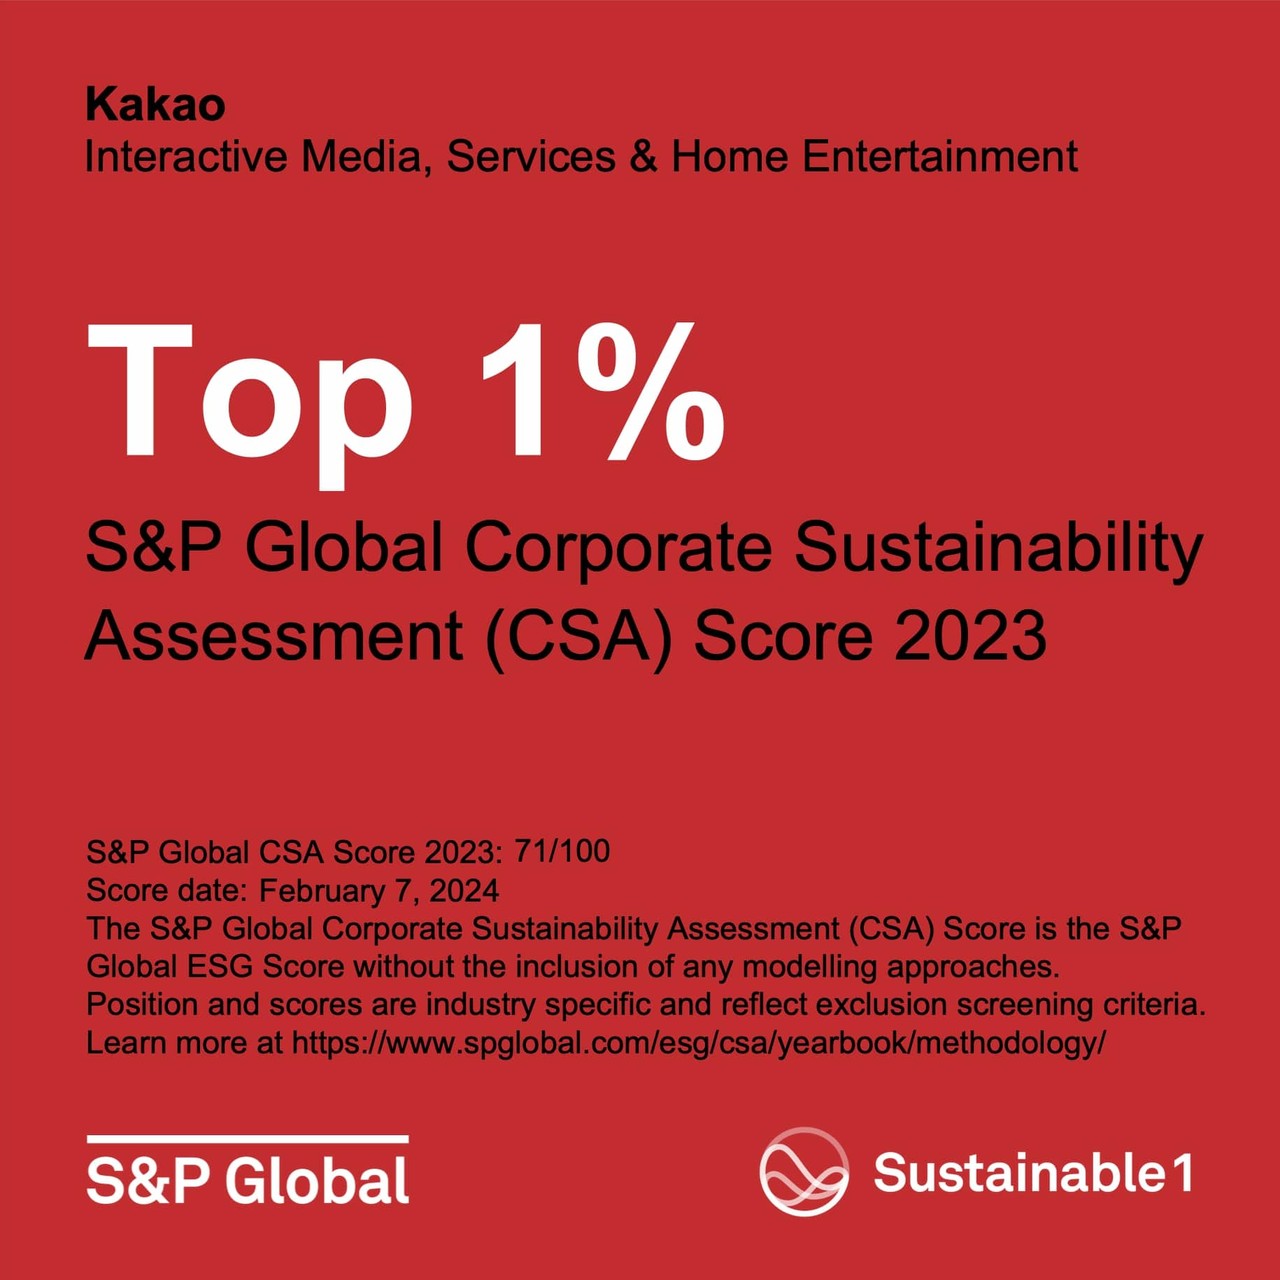 카카오가 S&P 글로벌이 발표하는 기업 지속가능성 평가에서 최상위 등급인 ‘톱 1%’로 선정됐다